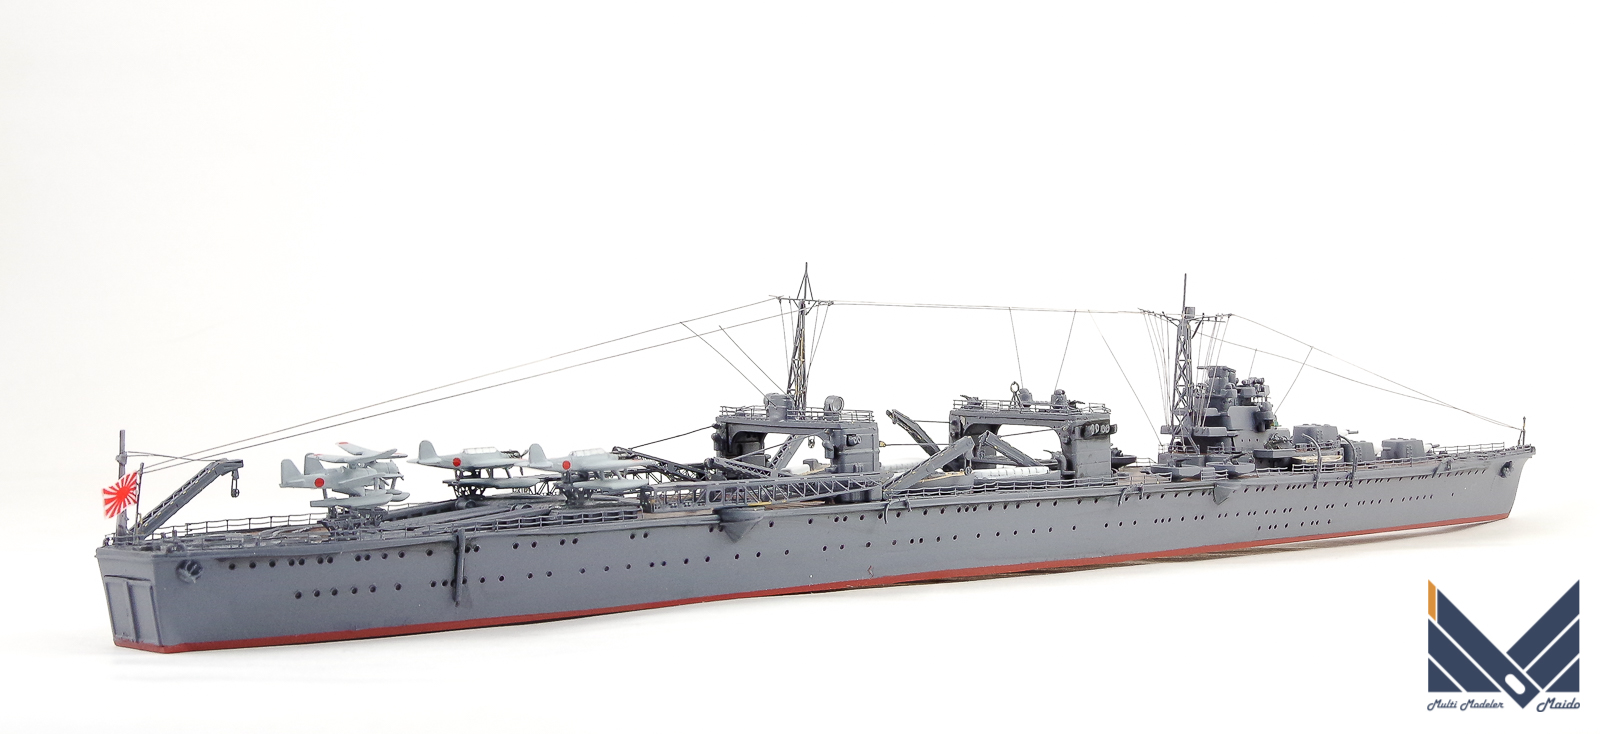 アオシマ 1/700 日本海軍水上機母艦「日進」完成品 NISSIN AOSHIMA 艦船模型完成品 - 模型工房M